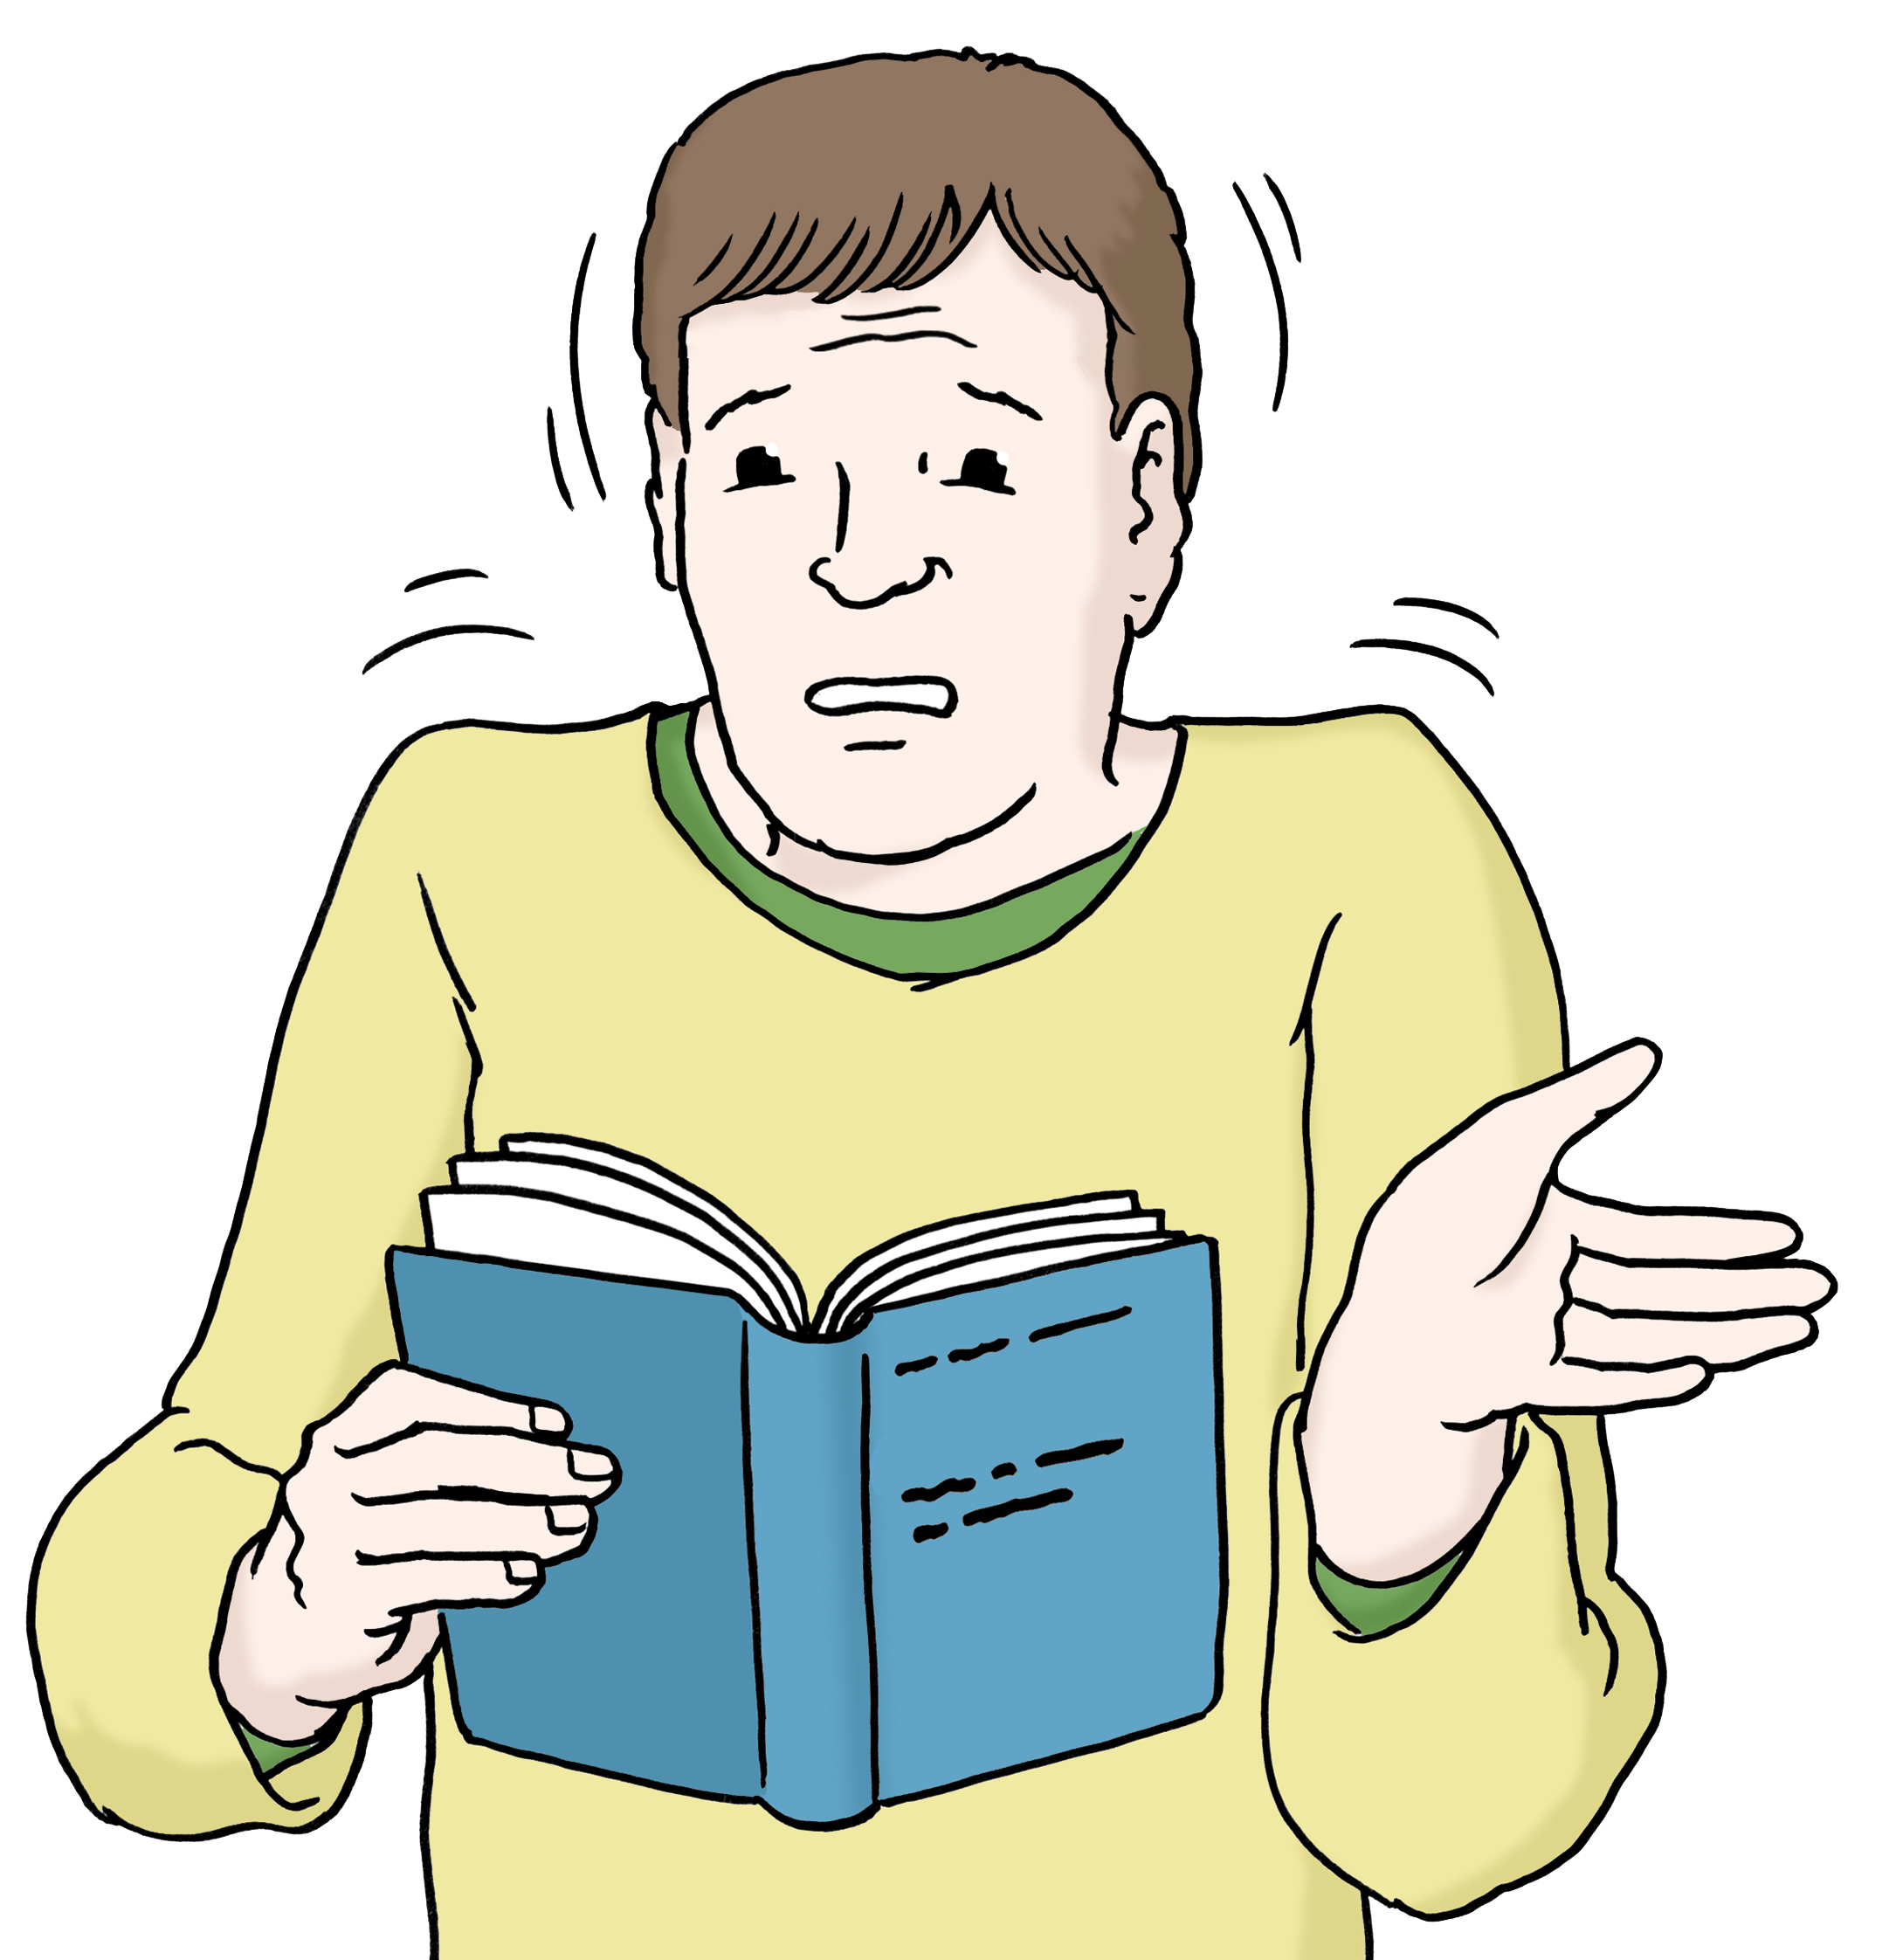 Zeichnung eines Mannes, der ein Buch in den Händen hält und den Inhalt nicht zu verstehen scheint. (verweist auf: Mehr Texte in Leichter Sprache)